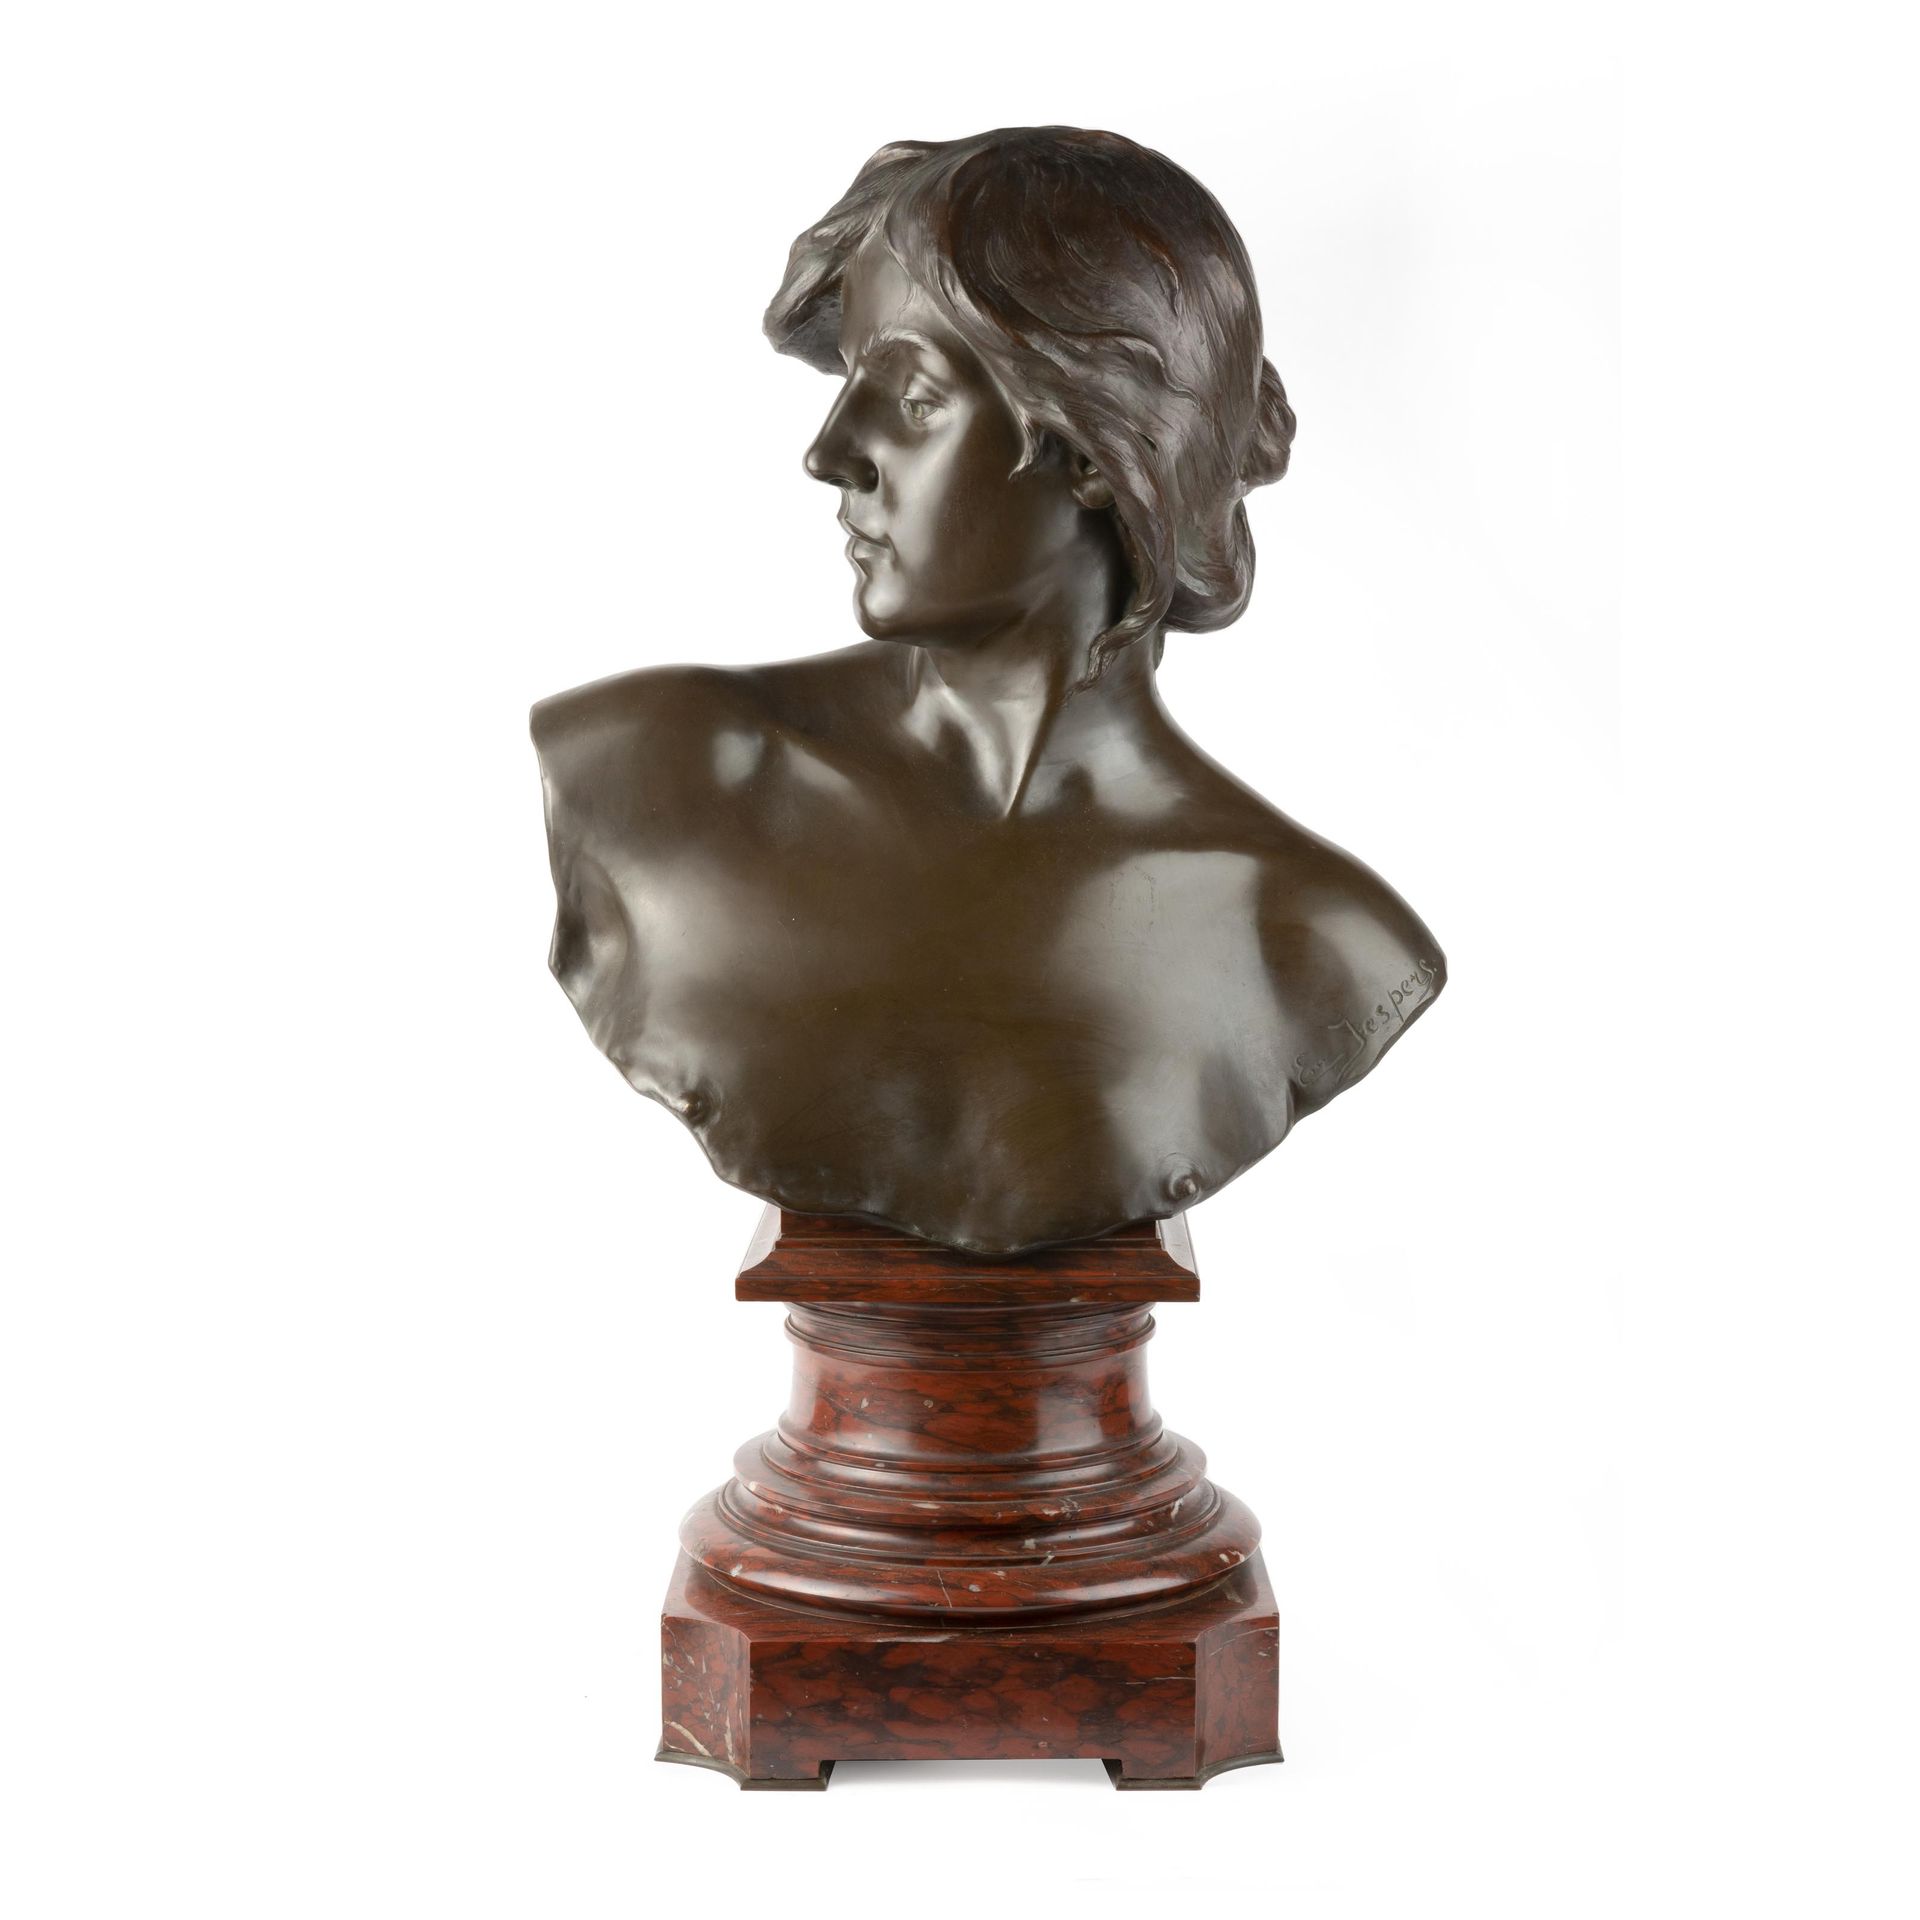 Emile JESPERS (1862-1918) Busto de mujer joven mirando hacia arriba.

Escultura &hellip;